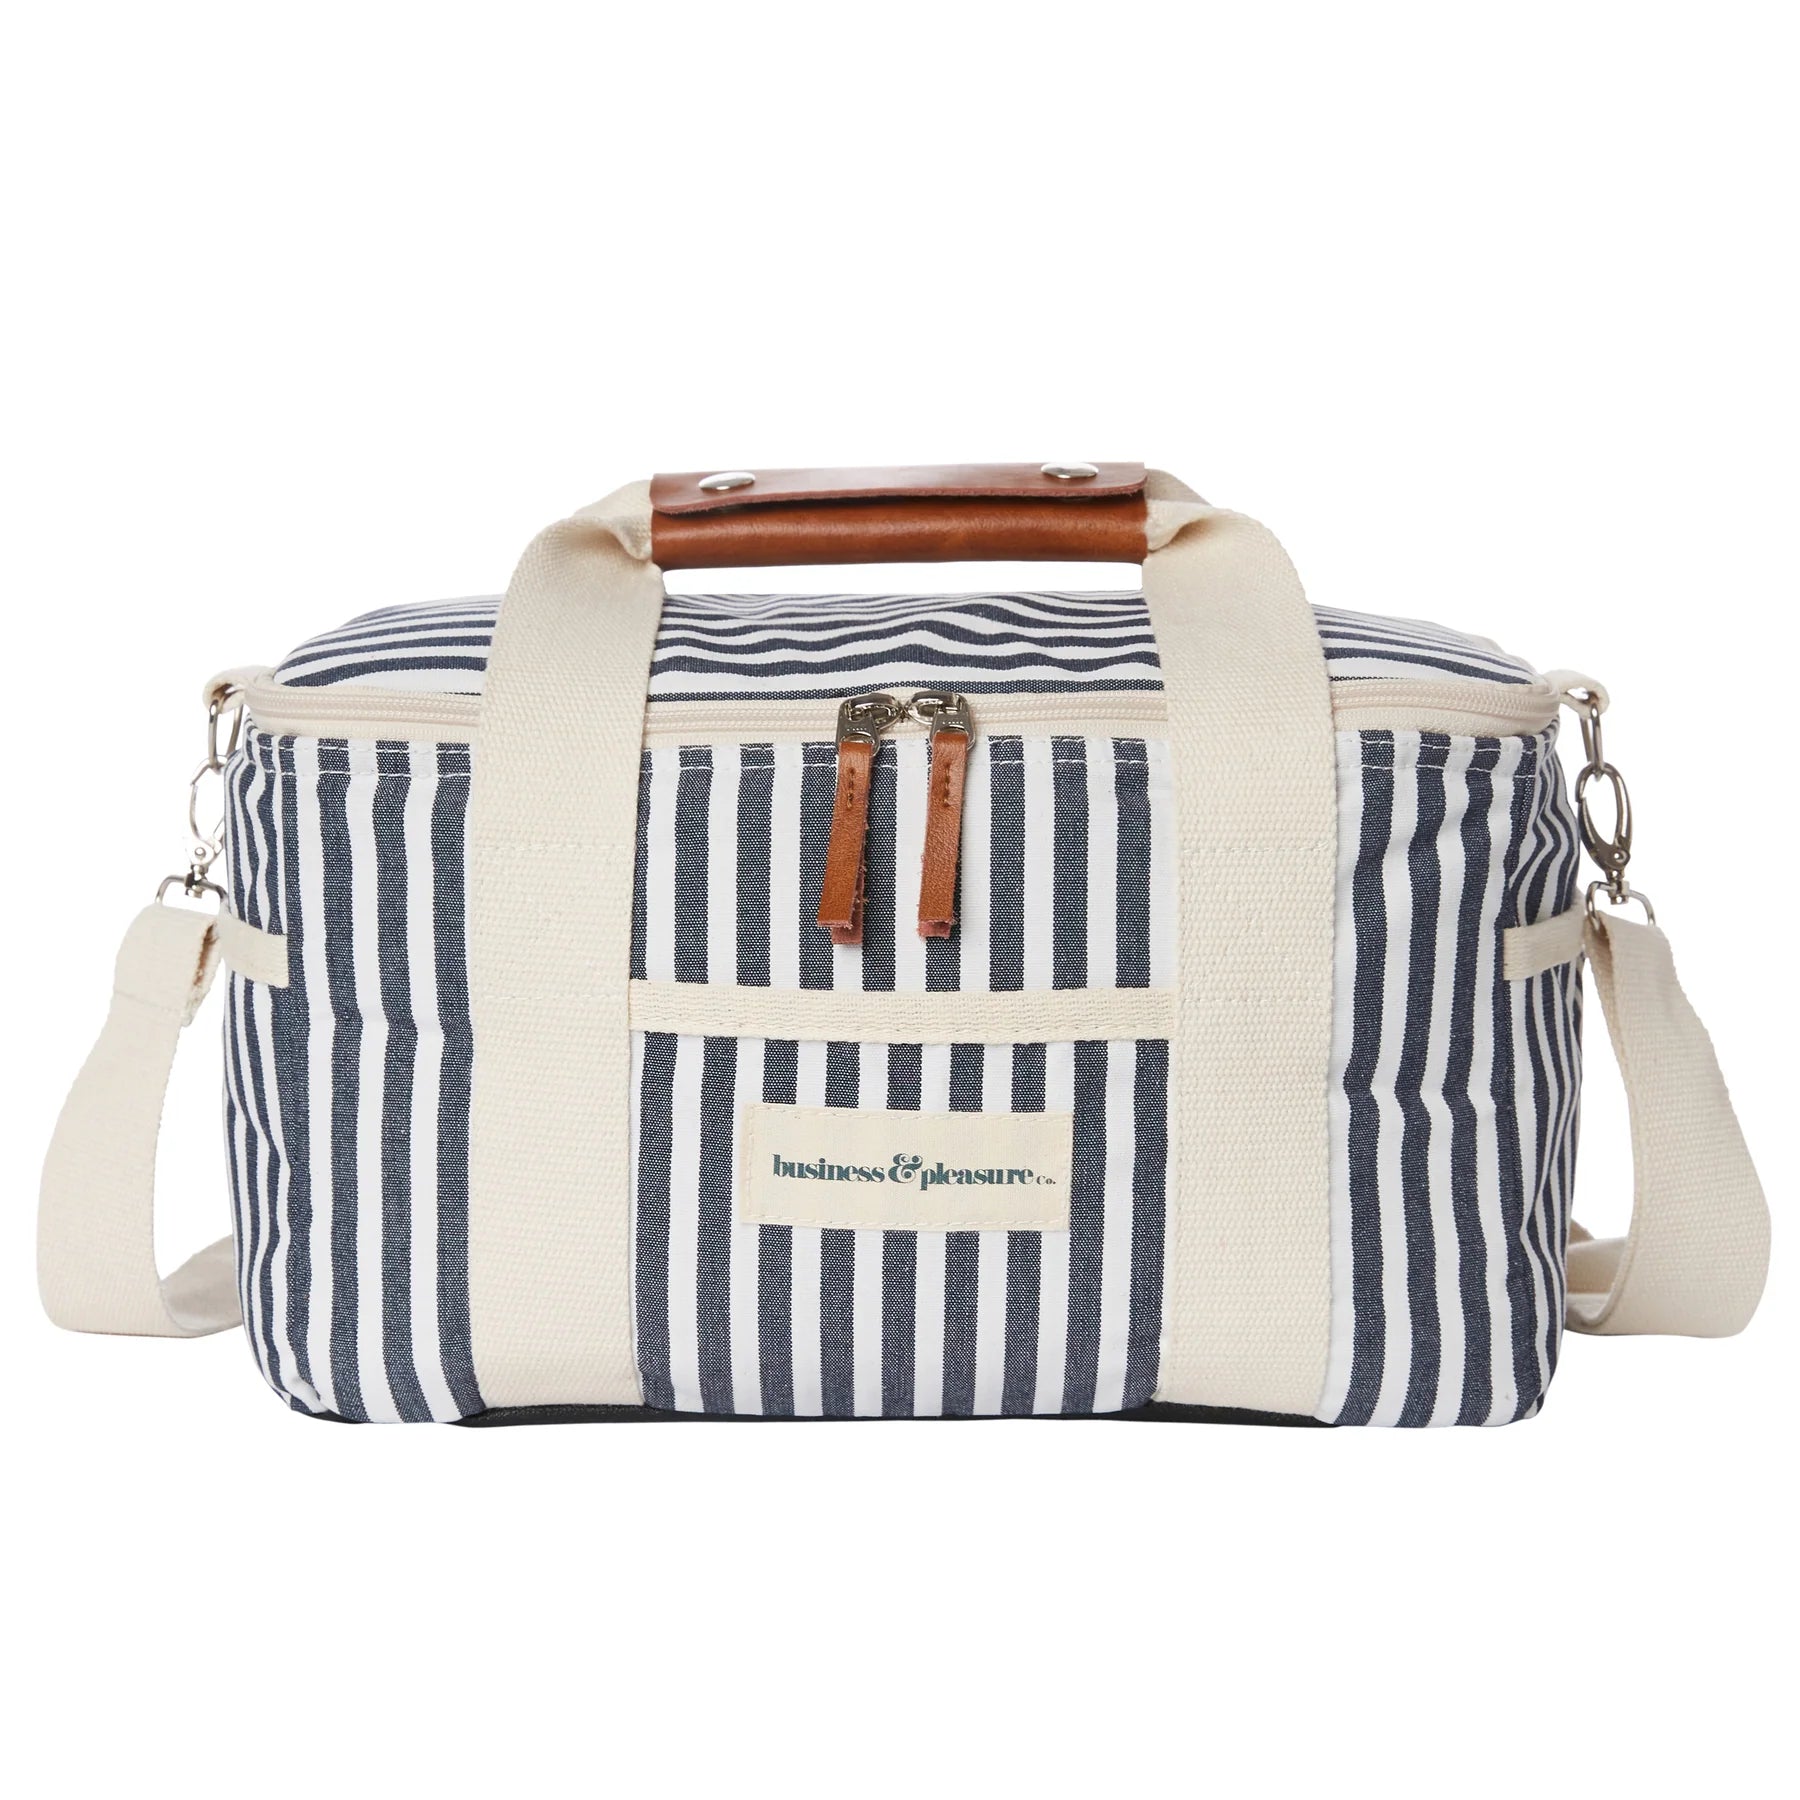 Lauren's Navy Stripe Premium Cooler Bag